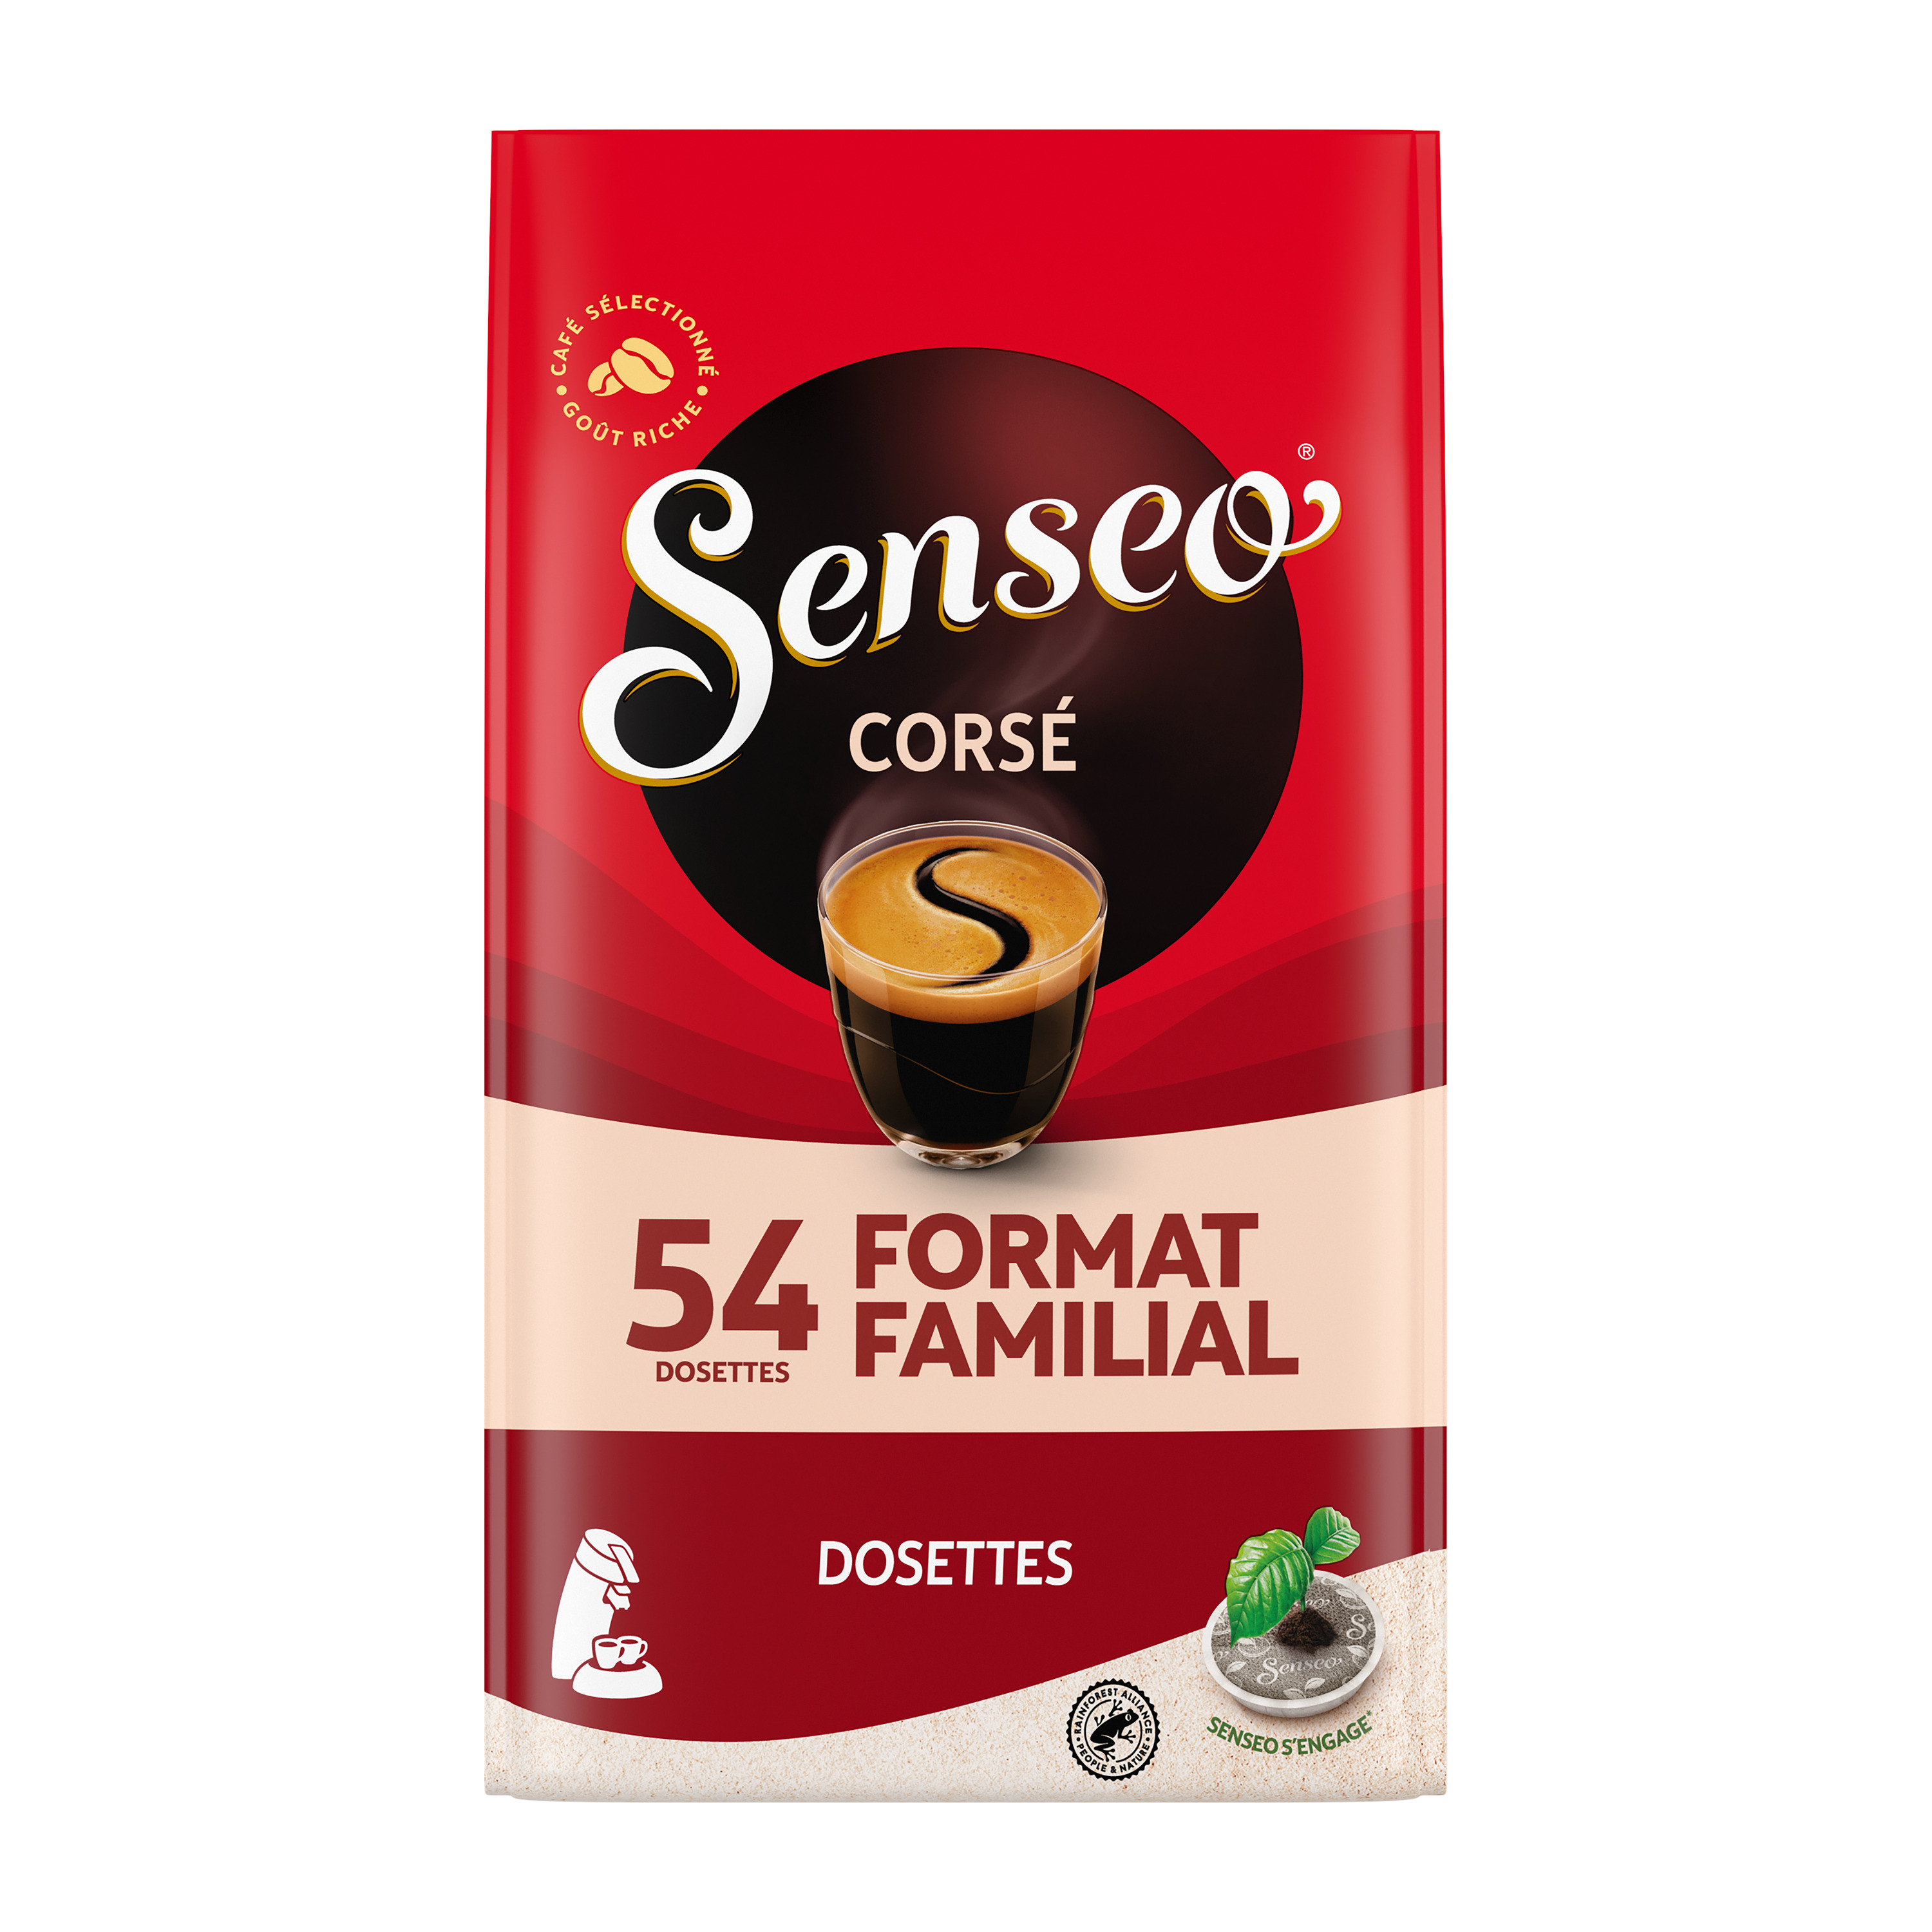 Dosette Senseo Café Corsé - 40 dosettes compostables